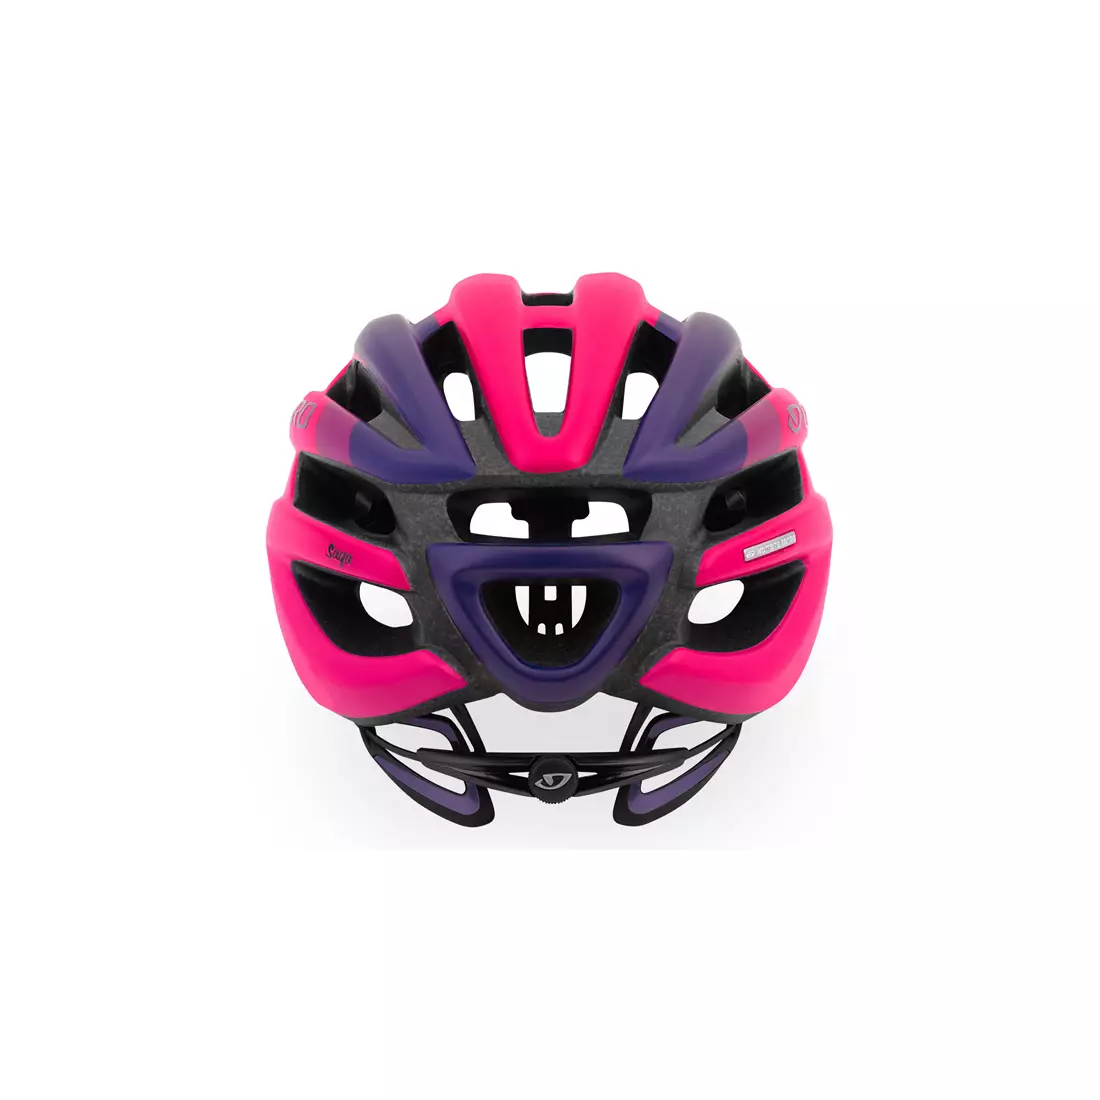 GIRO SAGA - dámská cyklistická přilba, růžová